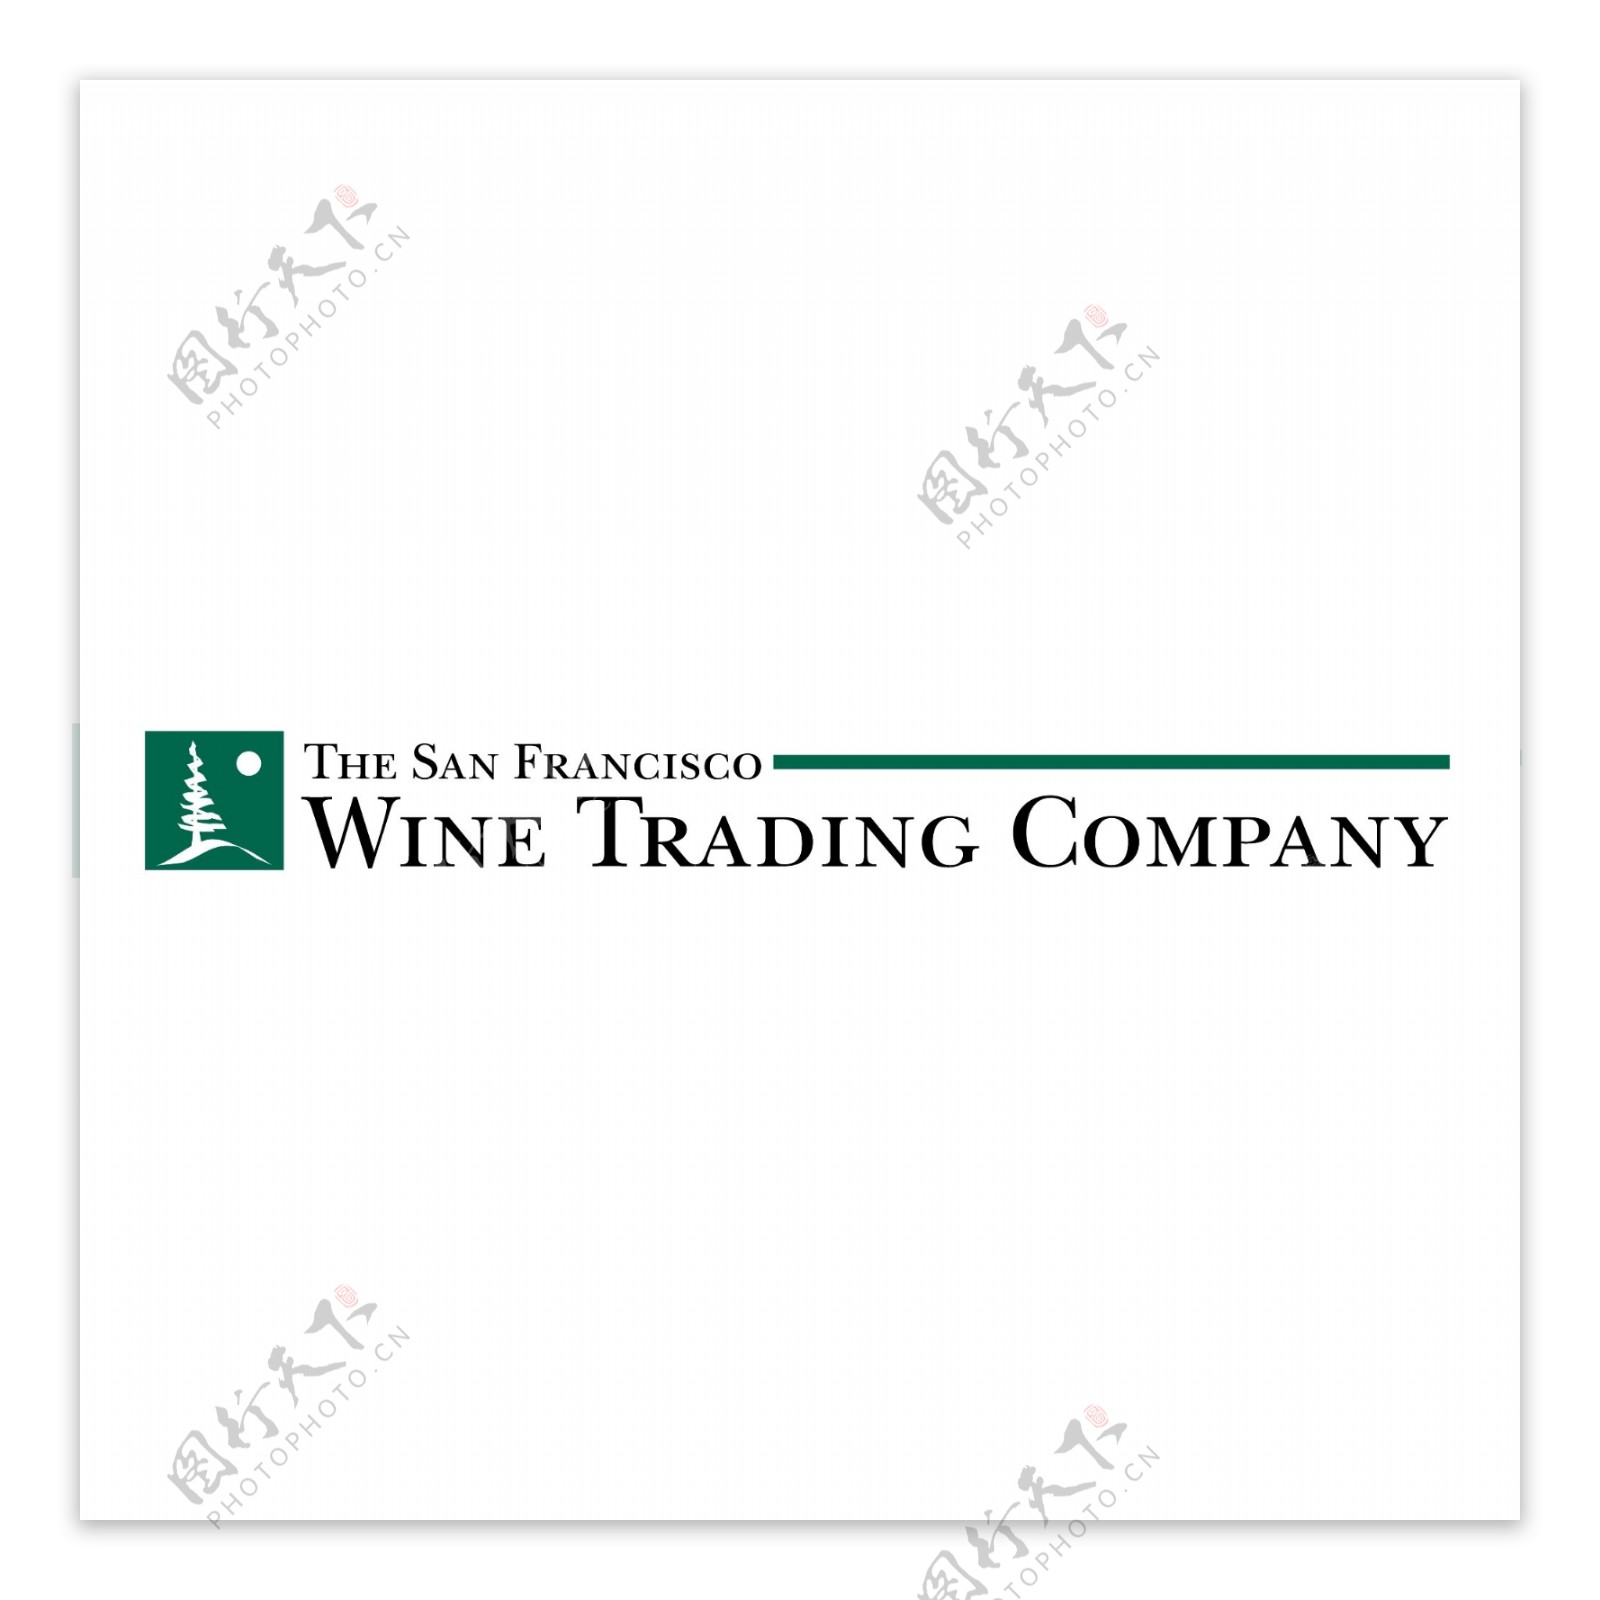 三藩葡萄酒贸易公司